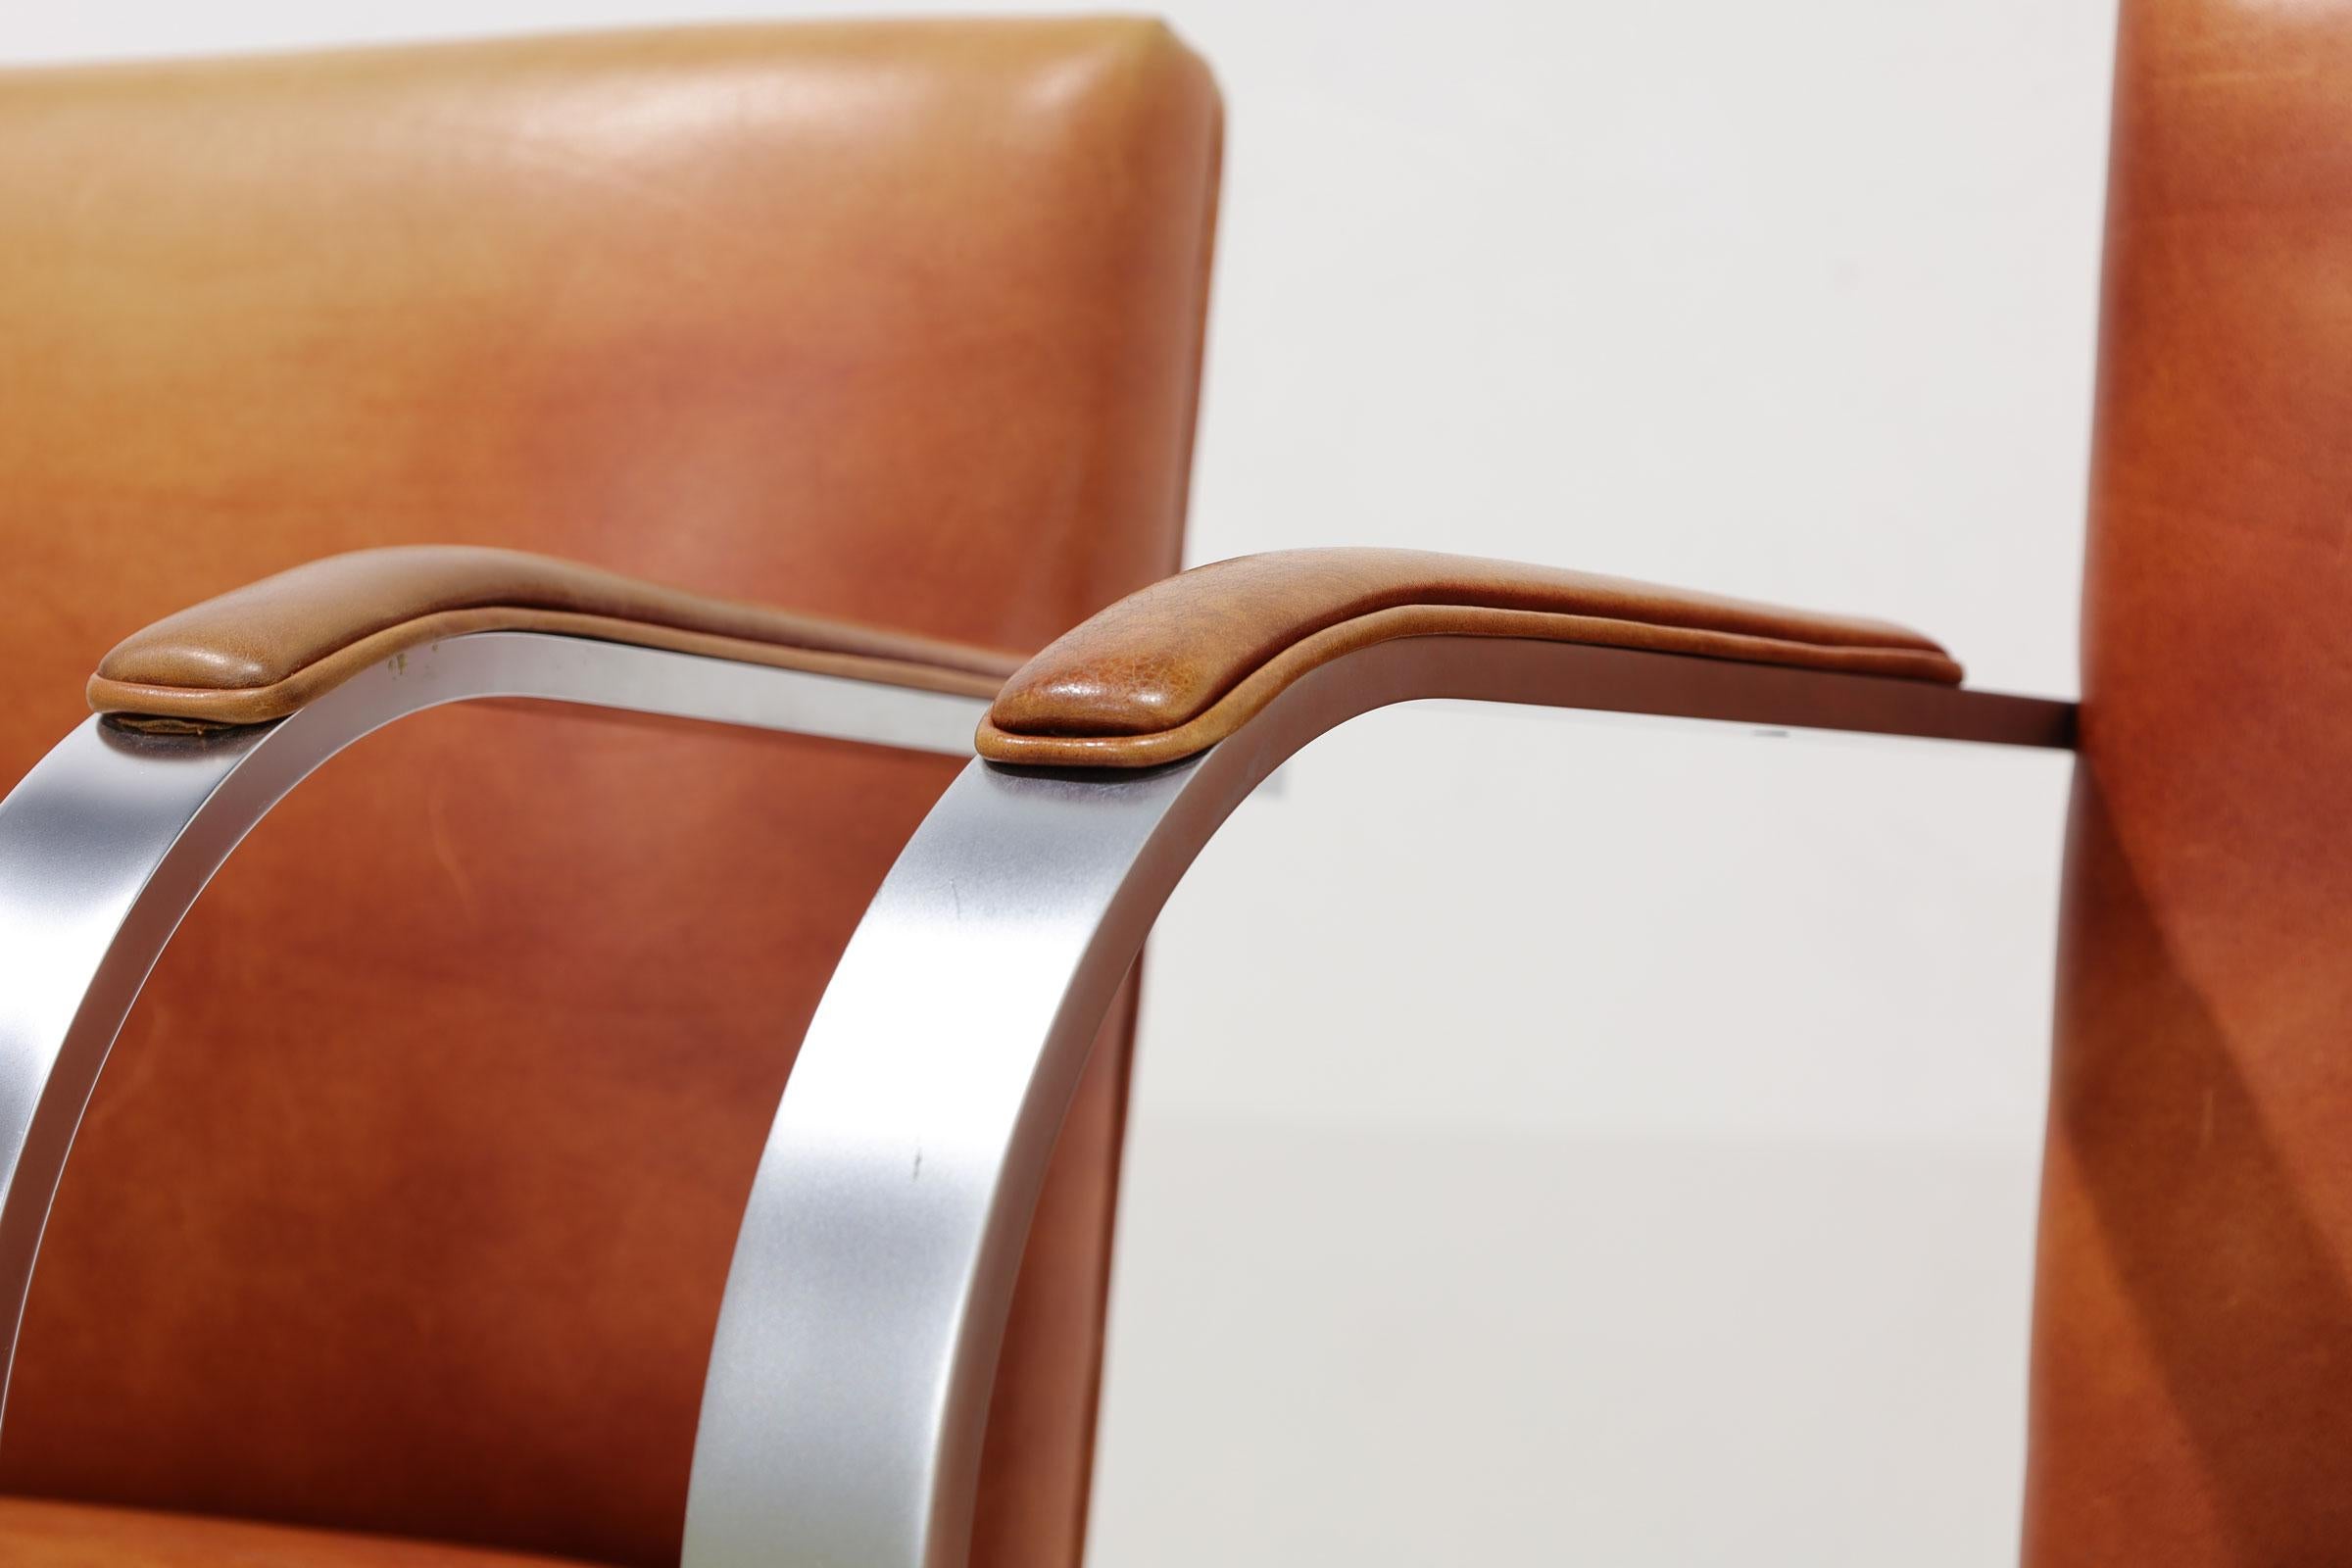 Nous avons jusqu'à 20 chaises Brno de Mies van der Rohe pour Knoll. Ils sont revêtus d'un cuir vieilli et sont dotés de pad de bras. Le cadre est en acier brossé. Les chaises sont estampillées Knoll Studio.